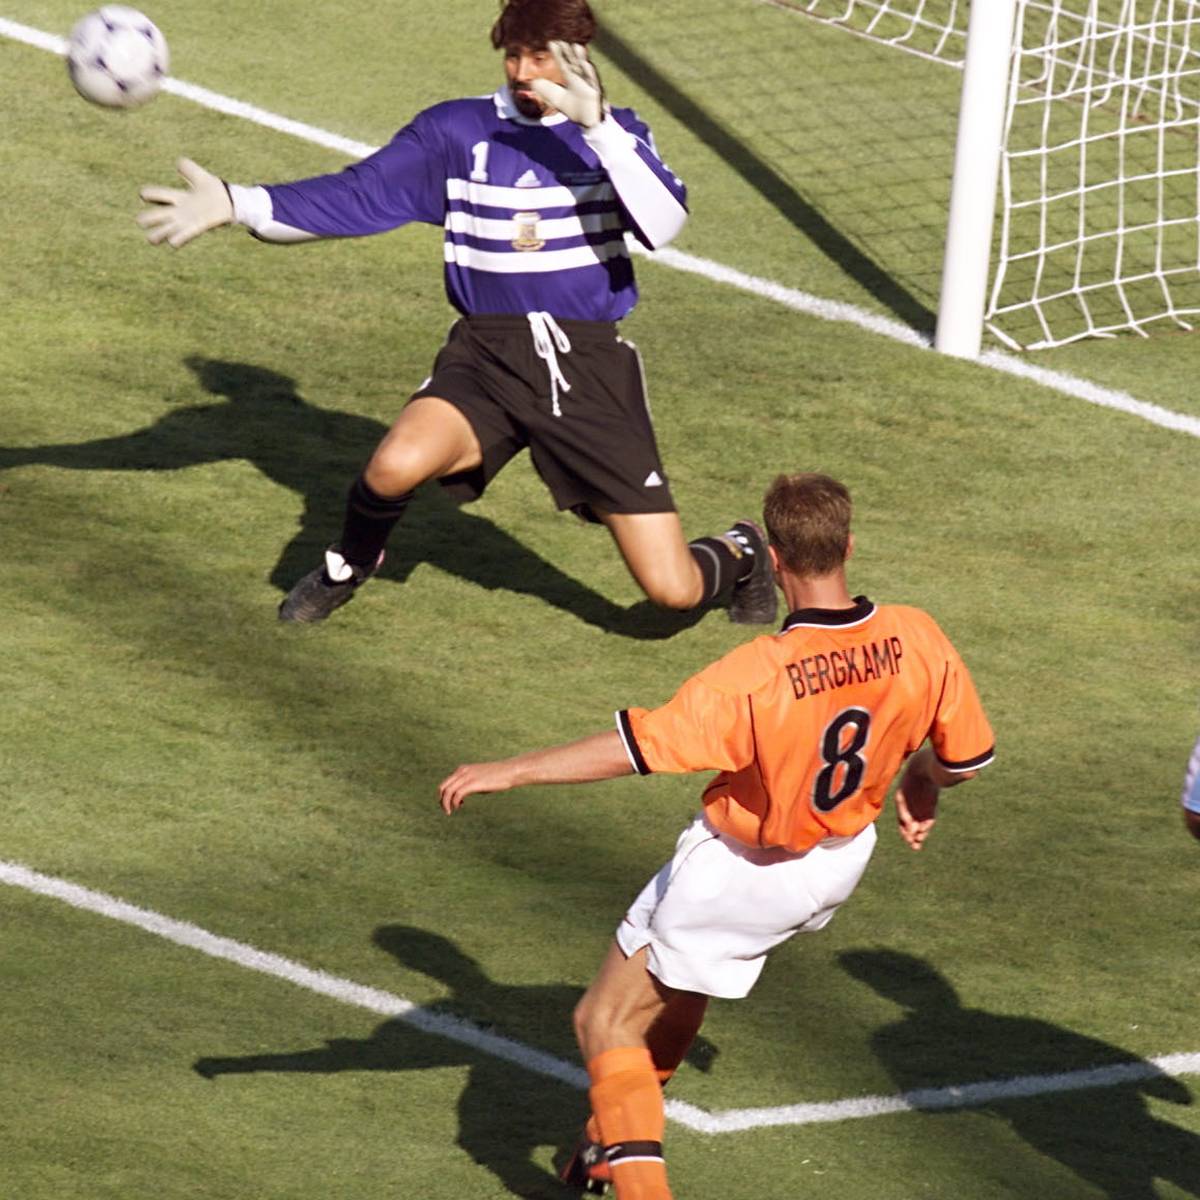 Am 4. Juli 1998 erzielt Dennis Bergkamp eines der schönsten Tore der WM-Geschichte. Mit drei Ballkontakten macht er sich gegen Argentinien unsterblich.